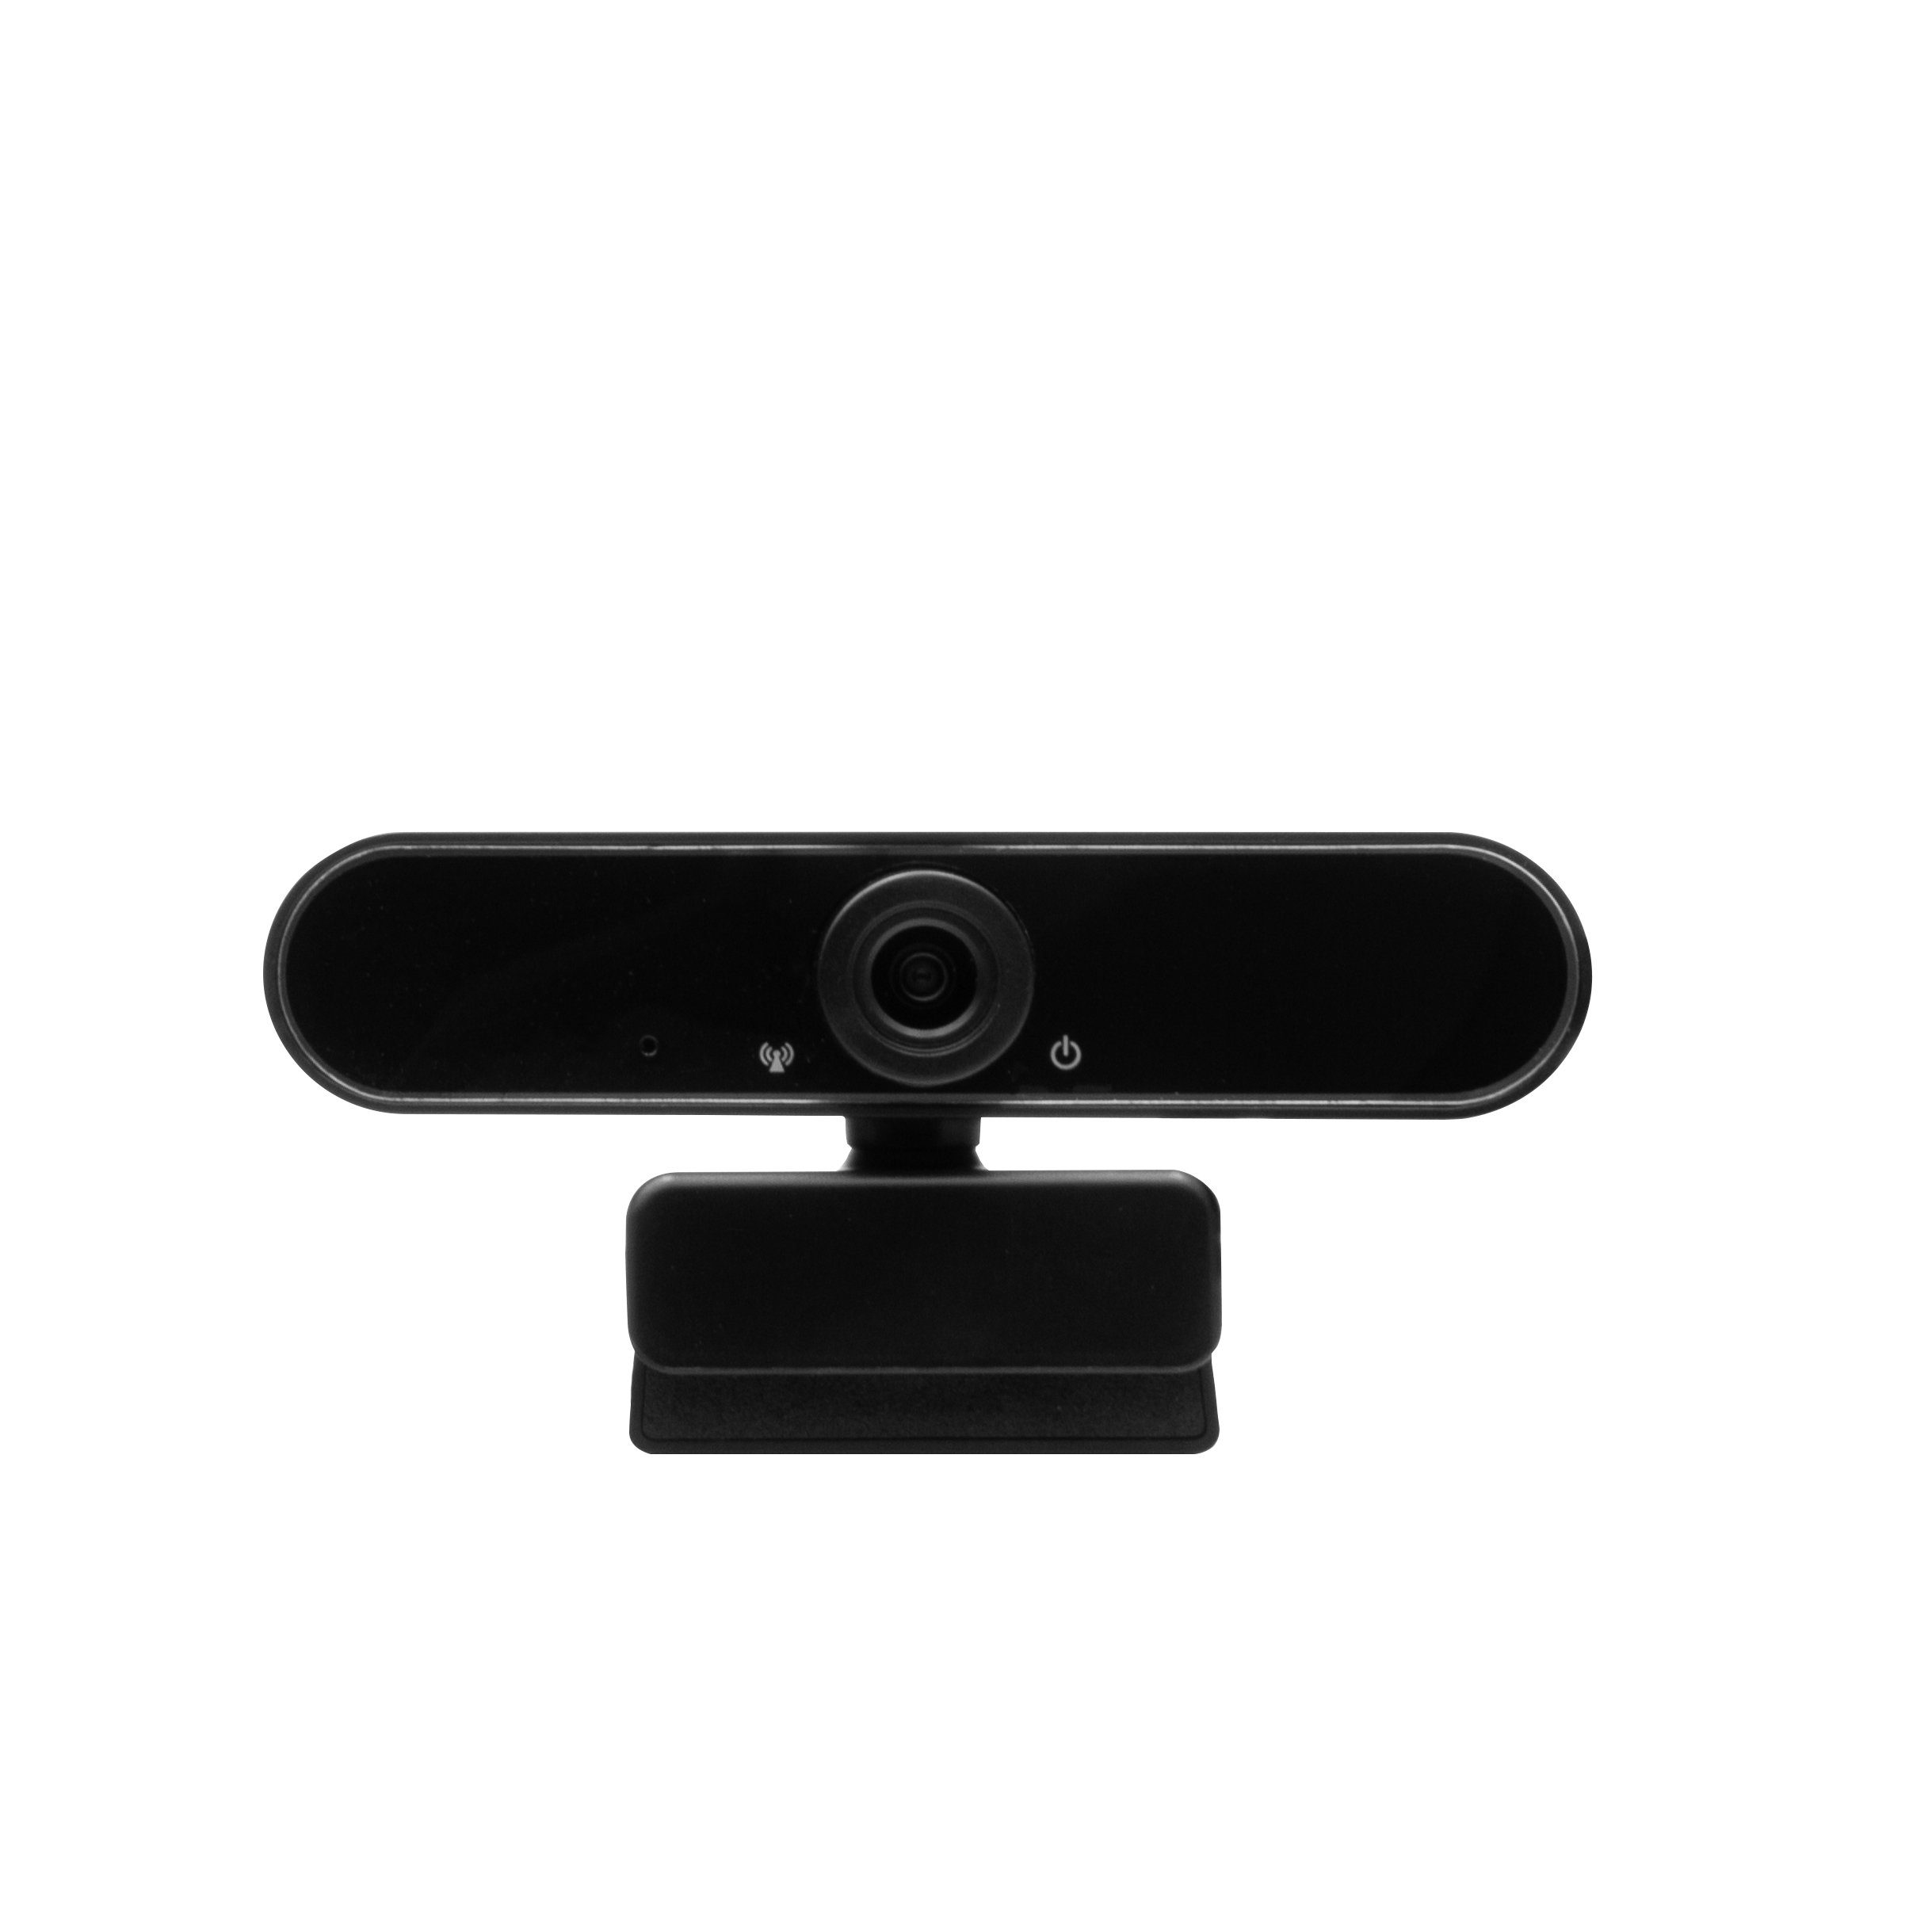 Hyrican Mikrofon USB, ST-SM50 Eingabegeräte-Set, + Headset kabelgebunden, Streamer + Startup Striker Studio schwarz DW1 Collection Webcam + + ST-GH530